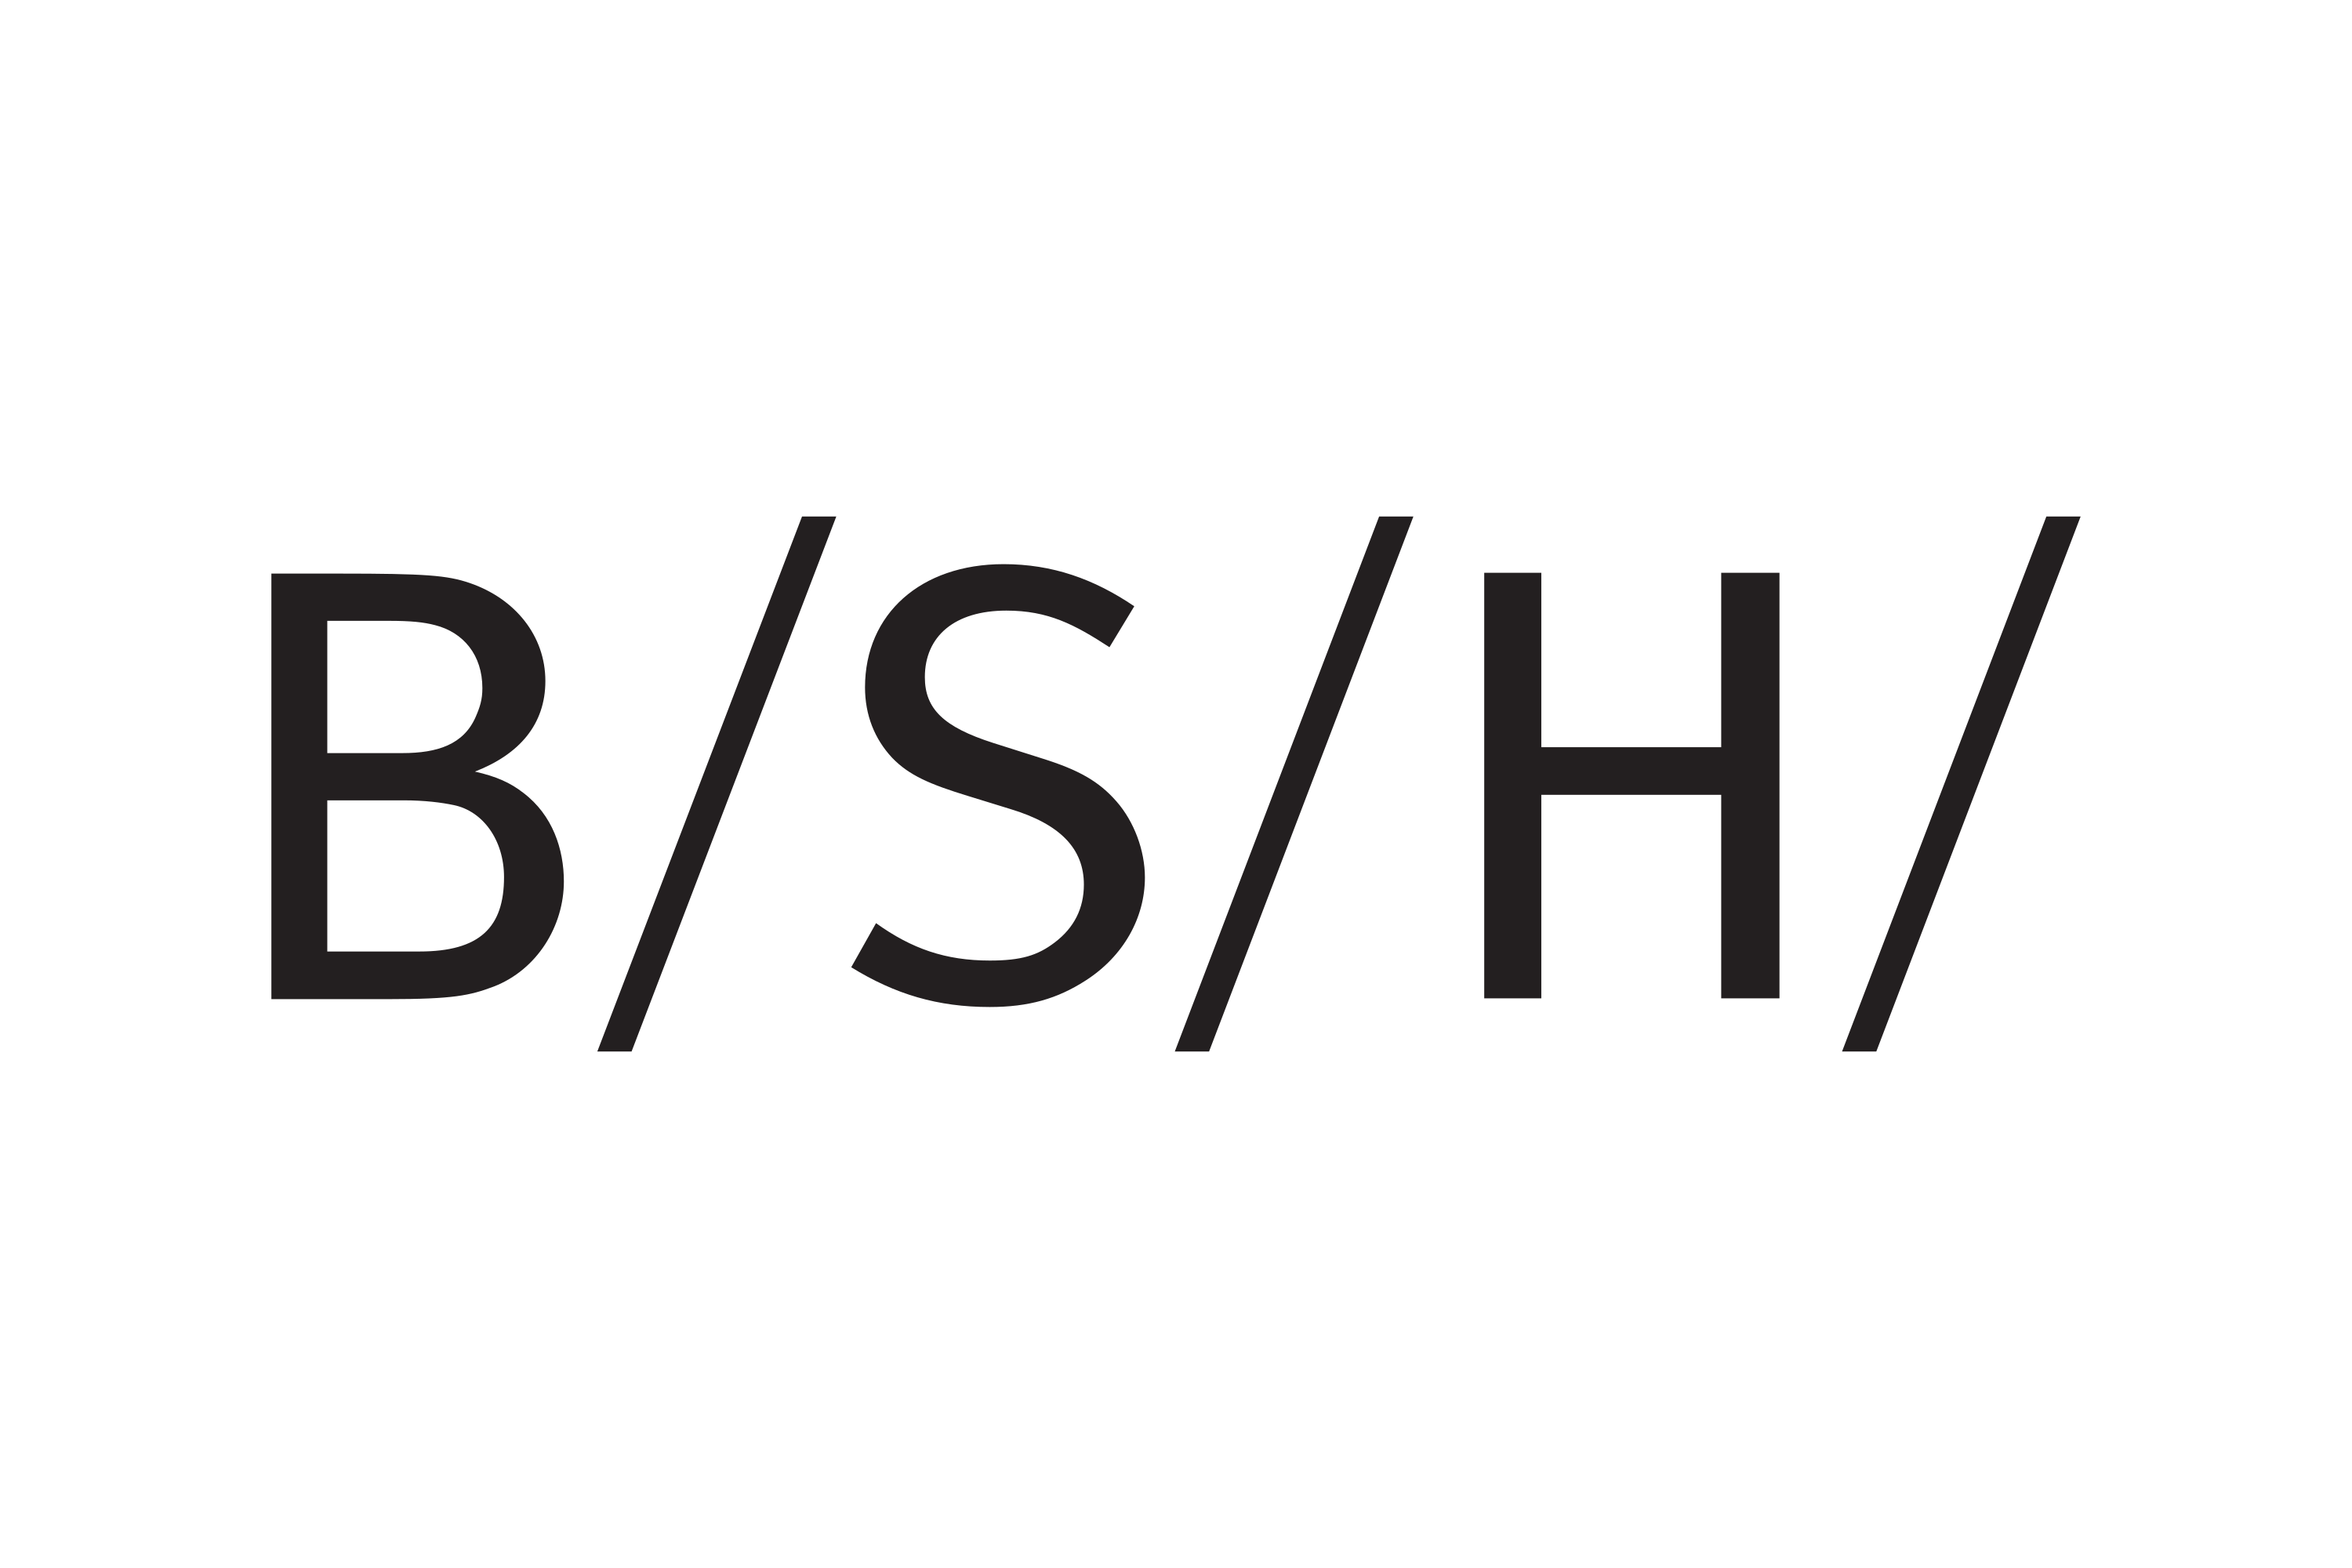 BSH Hausgeräte GmbH Logo